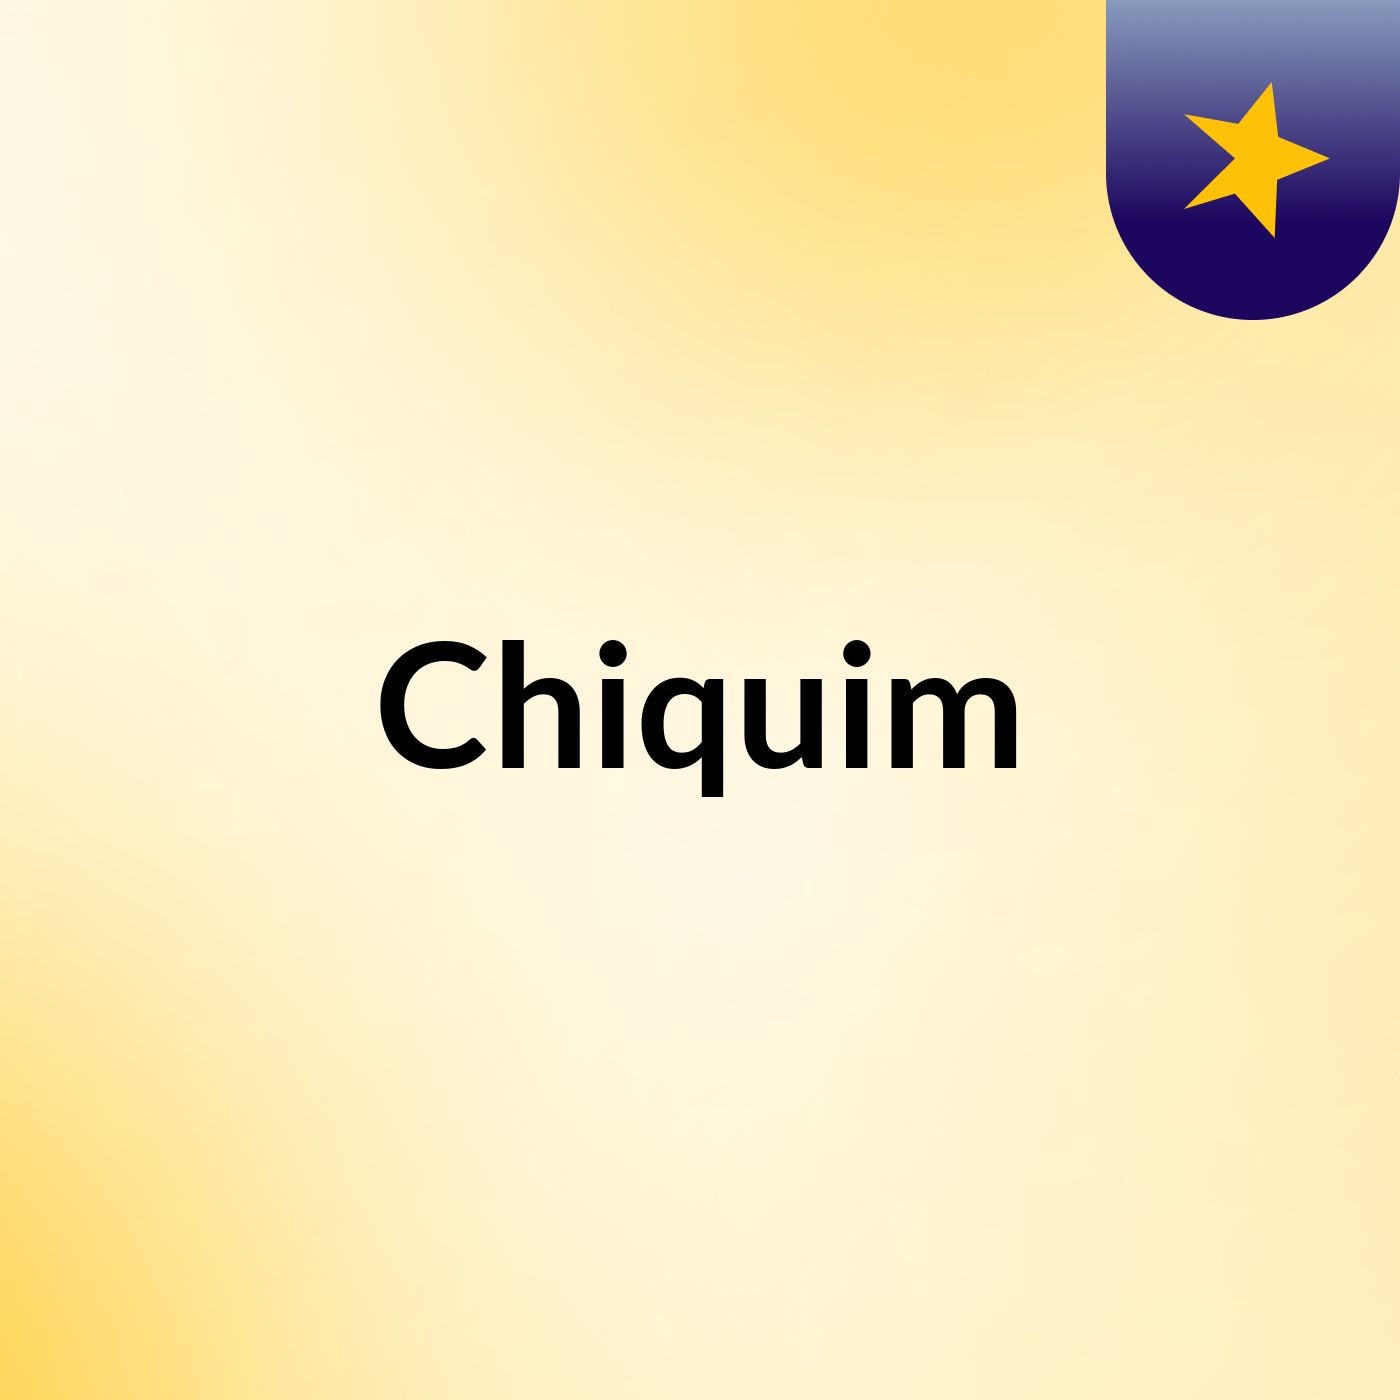 Chiquim